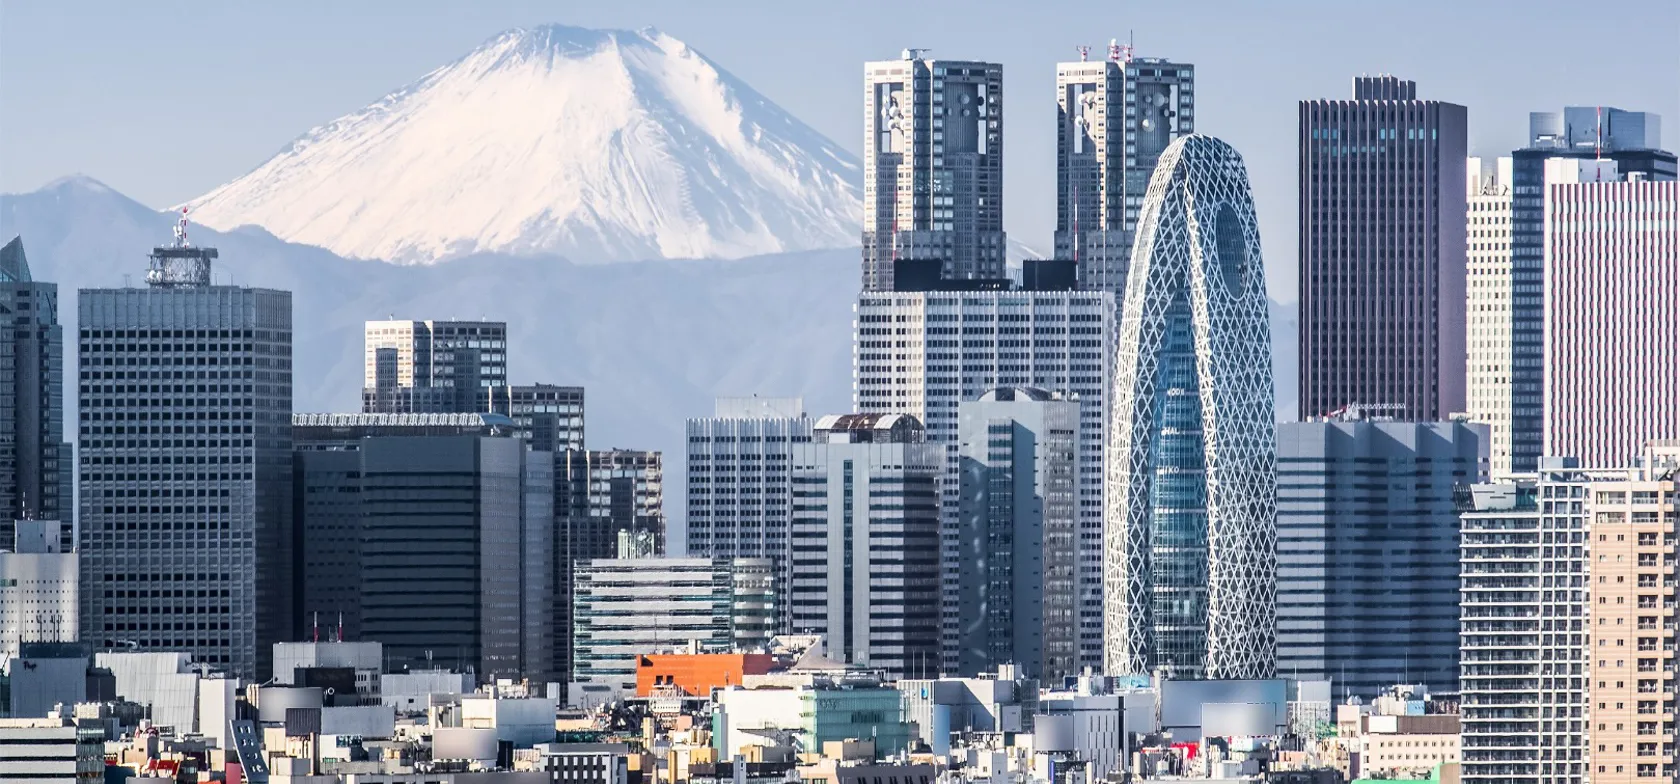 Tokyos skyskrabere med Fuji i baggrunden. Foto Viktors Farmor